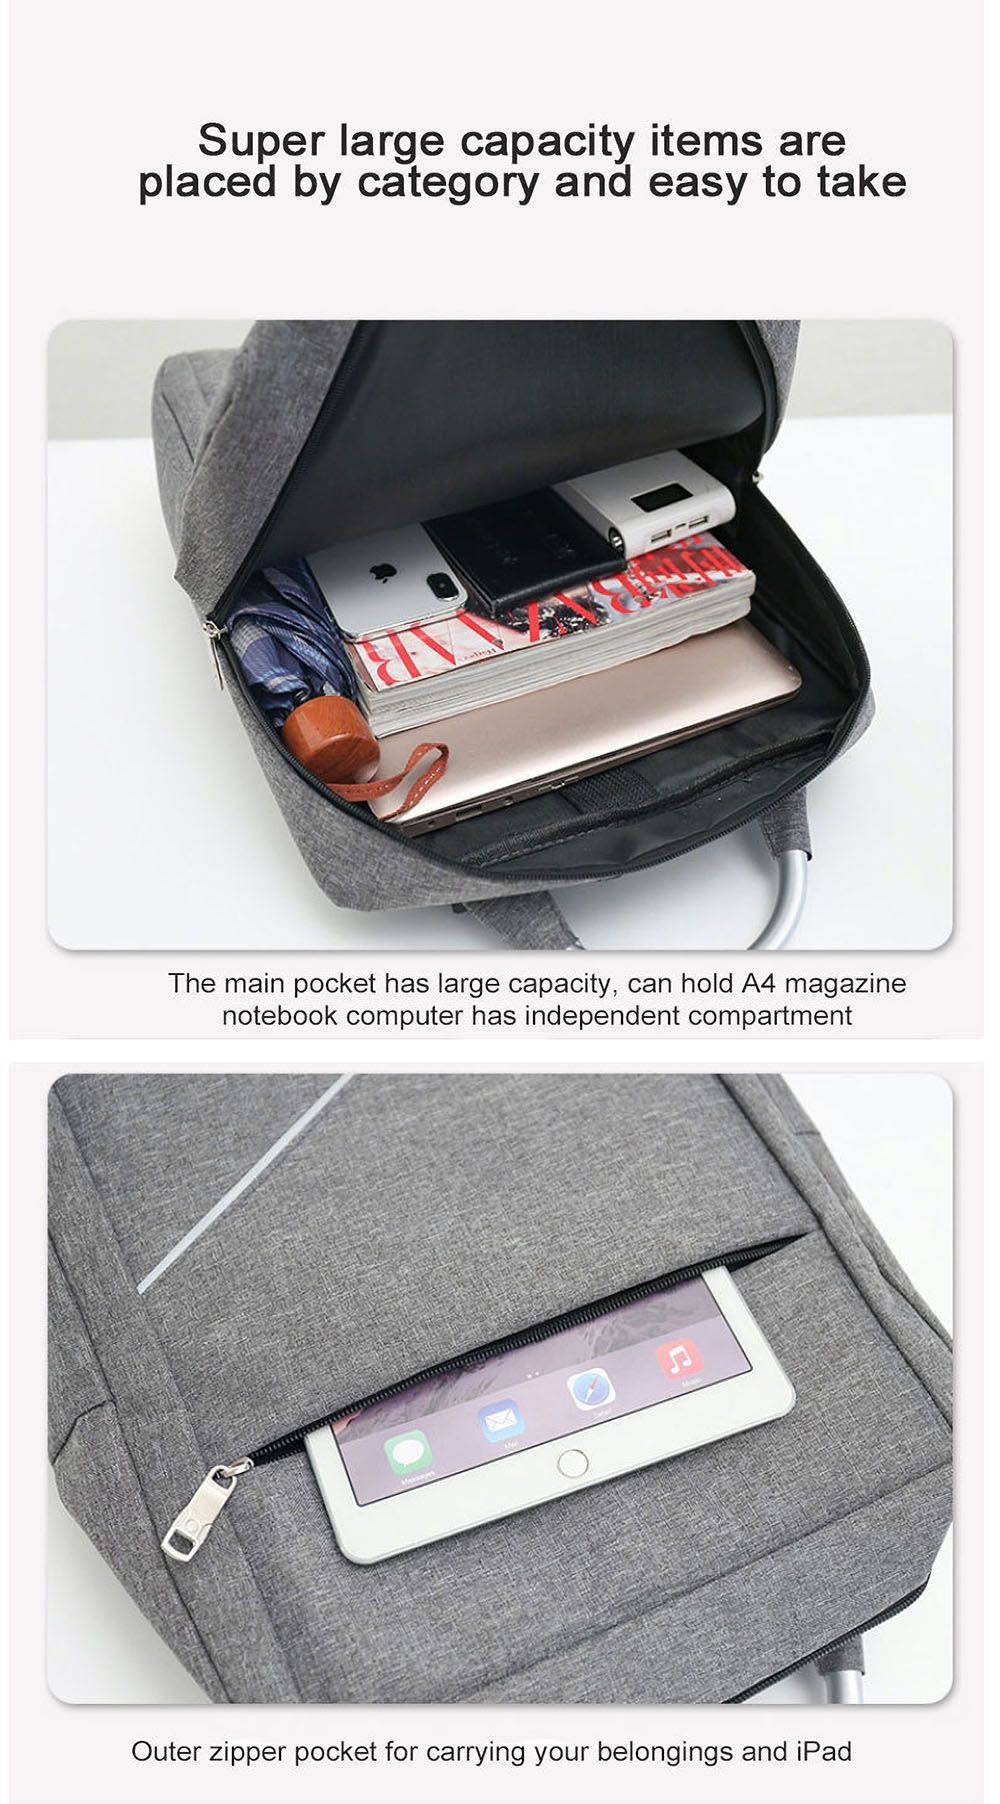 Business-Laptop-Bag-Backpack-Waterproof-USB-Charging-Computer-Storage-Bag-Travel-Schoolbag-for-156-i-1765680